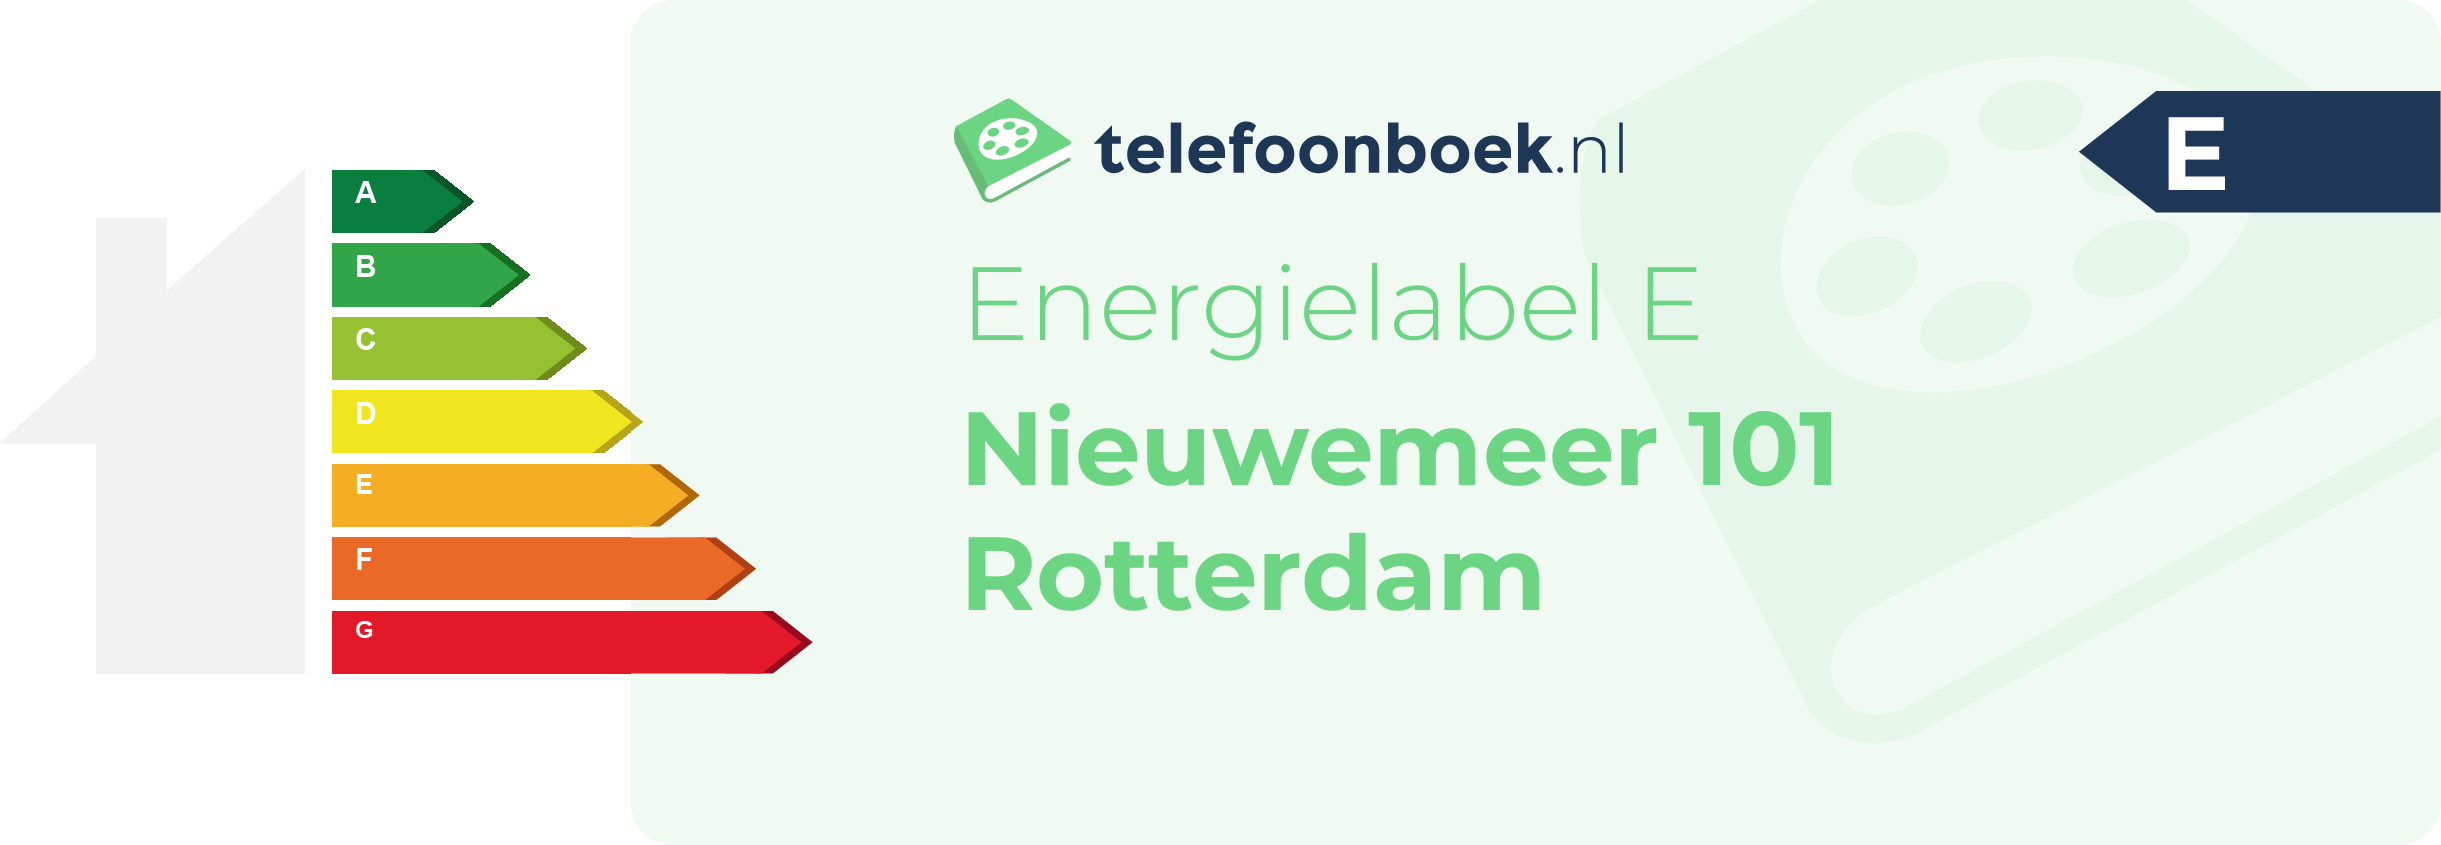 Energielabel Nieuwemeer 101 Rotterdam